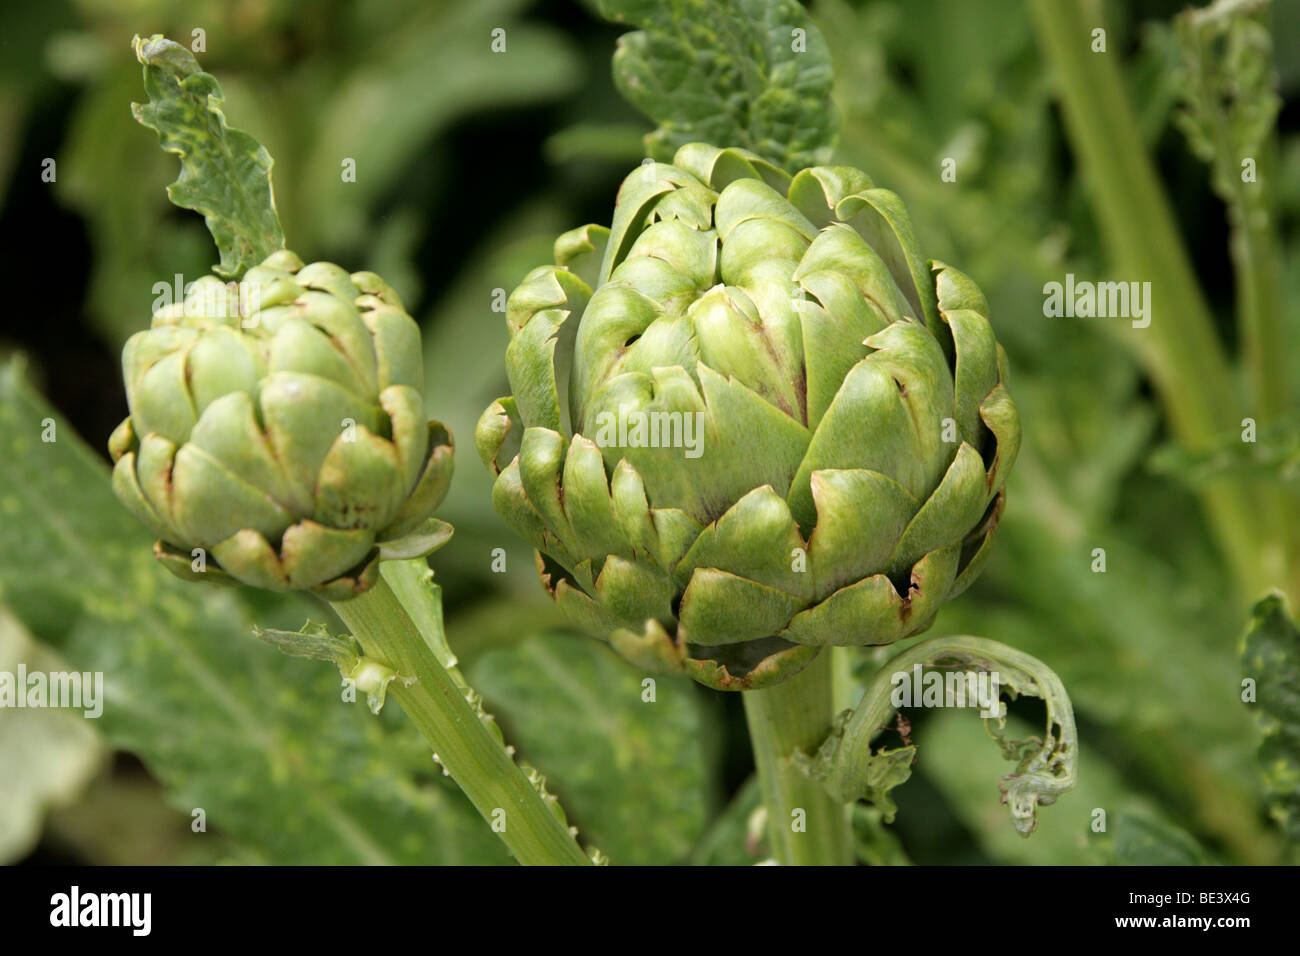 Carciofi, Cynara scolymus, Asteraceae Foto Stock